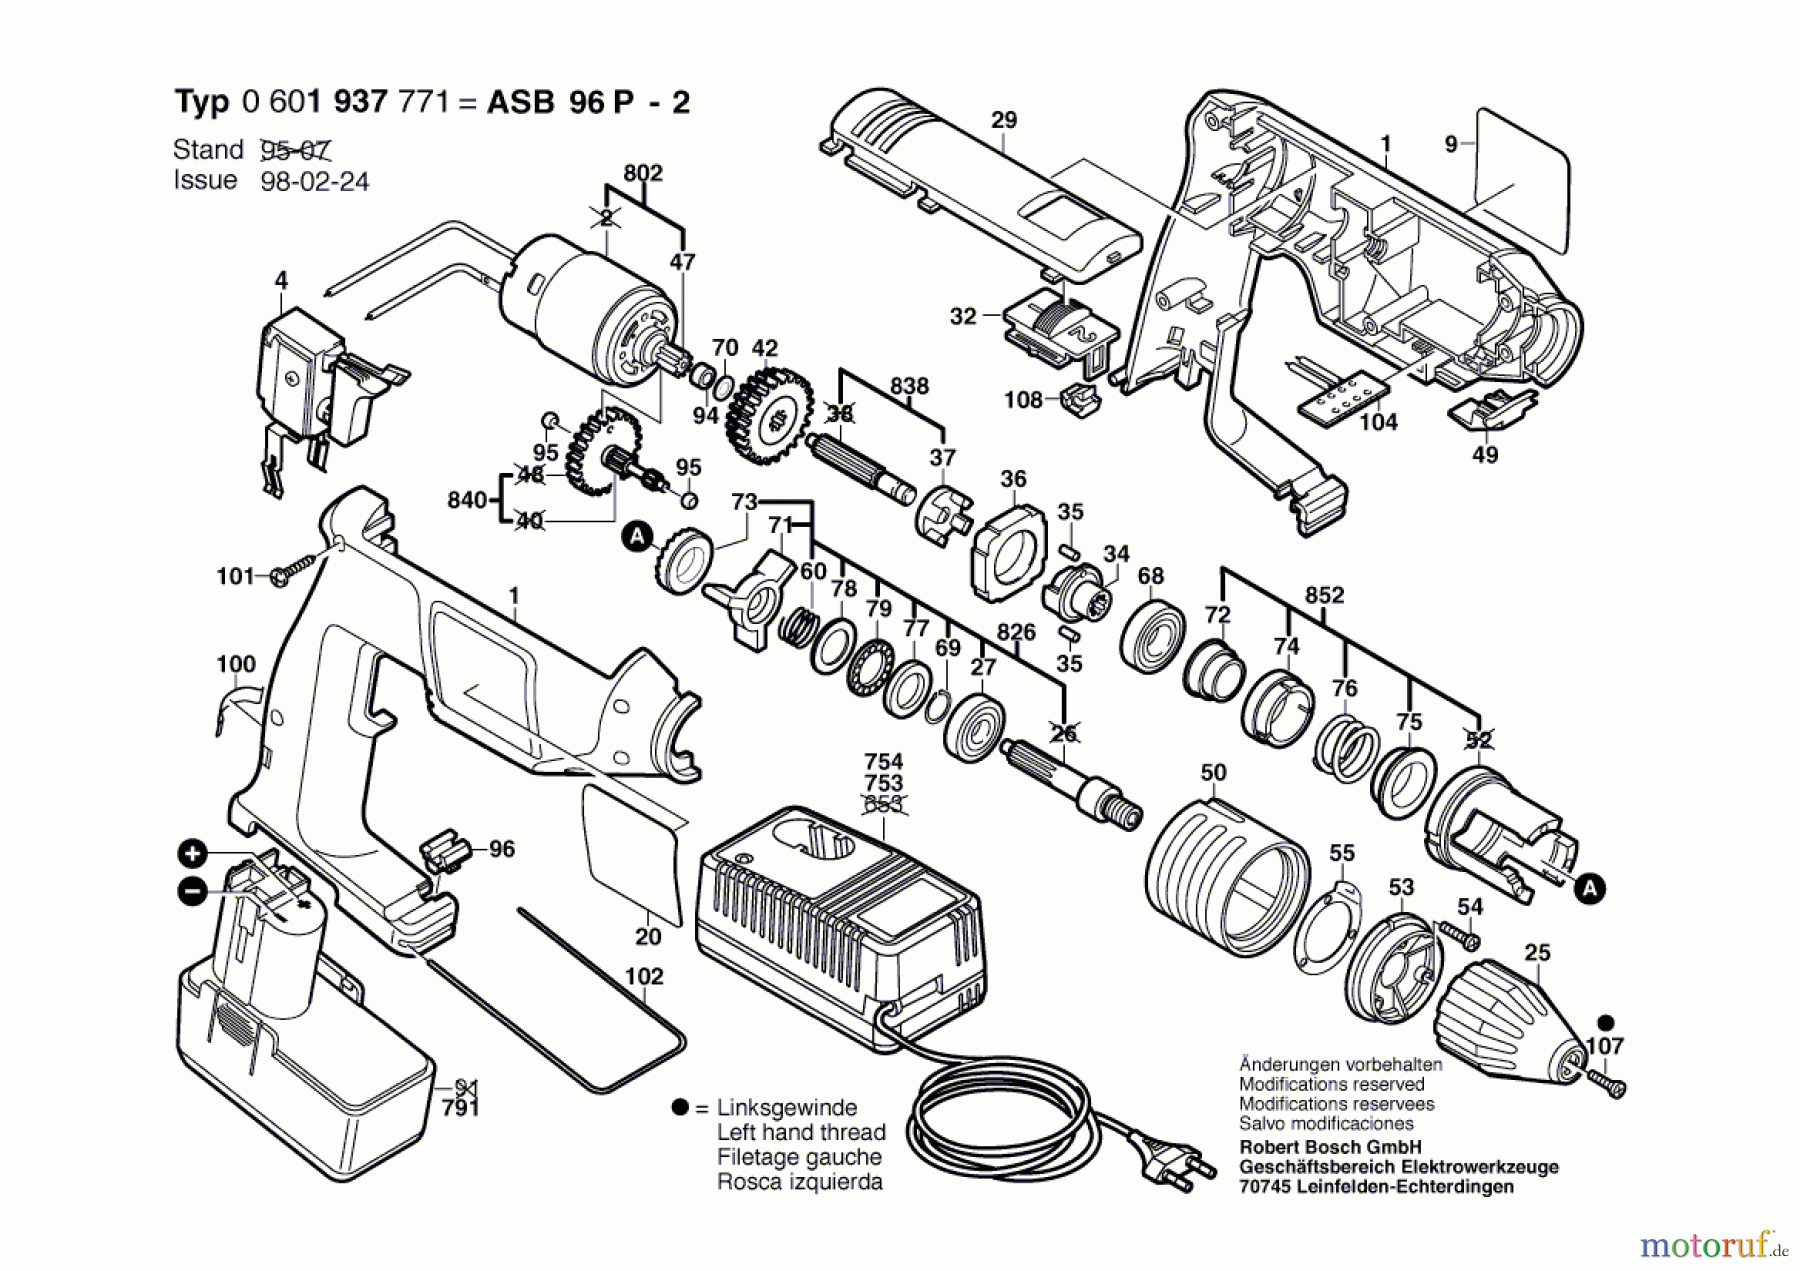  Bosch Akku Werkzeug Gw-Akkuschlagbohrmaschine ASB 96 P-2 Seite 1